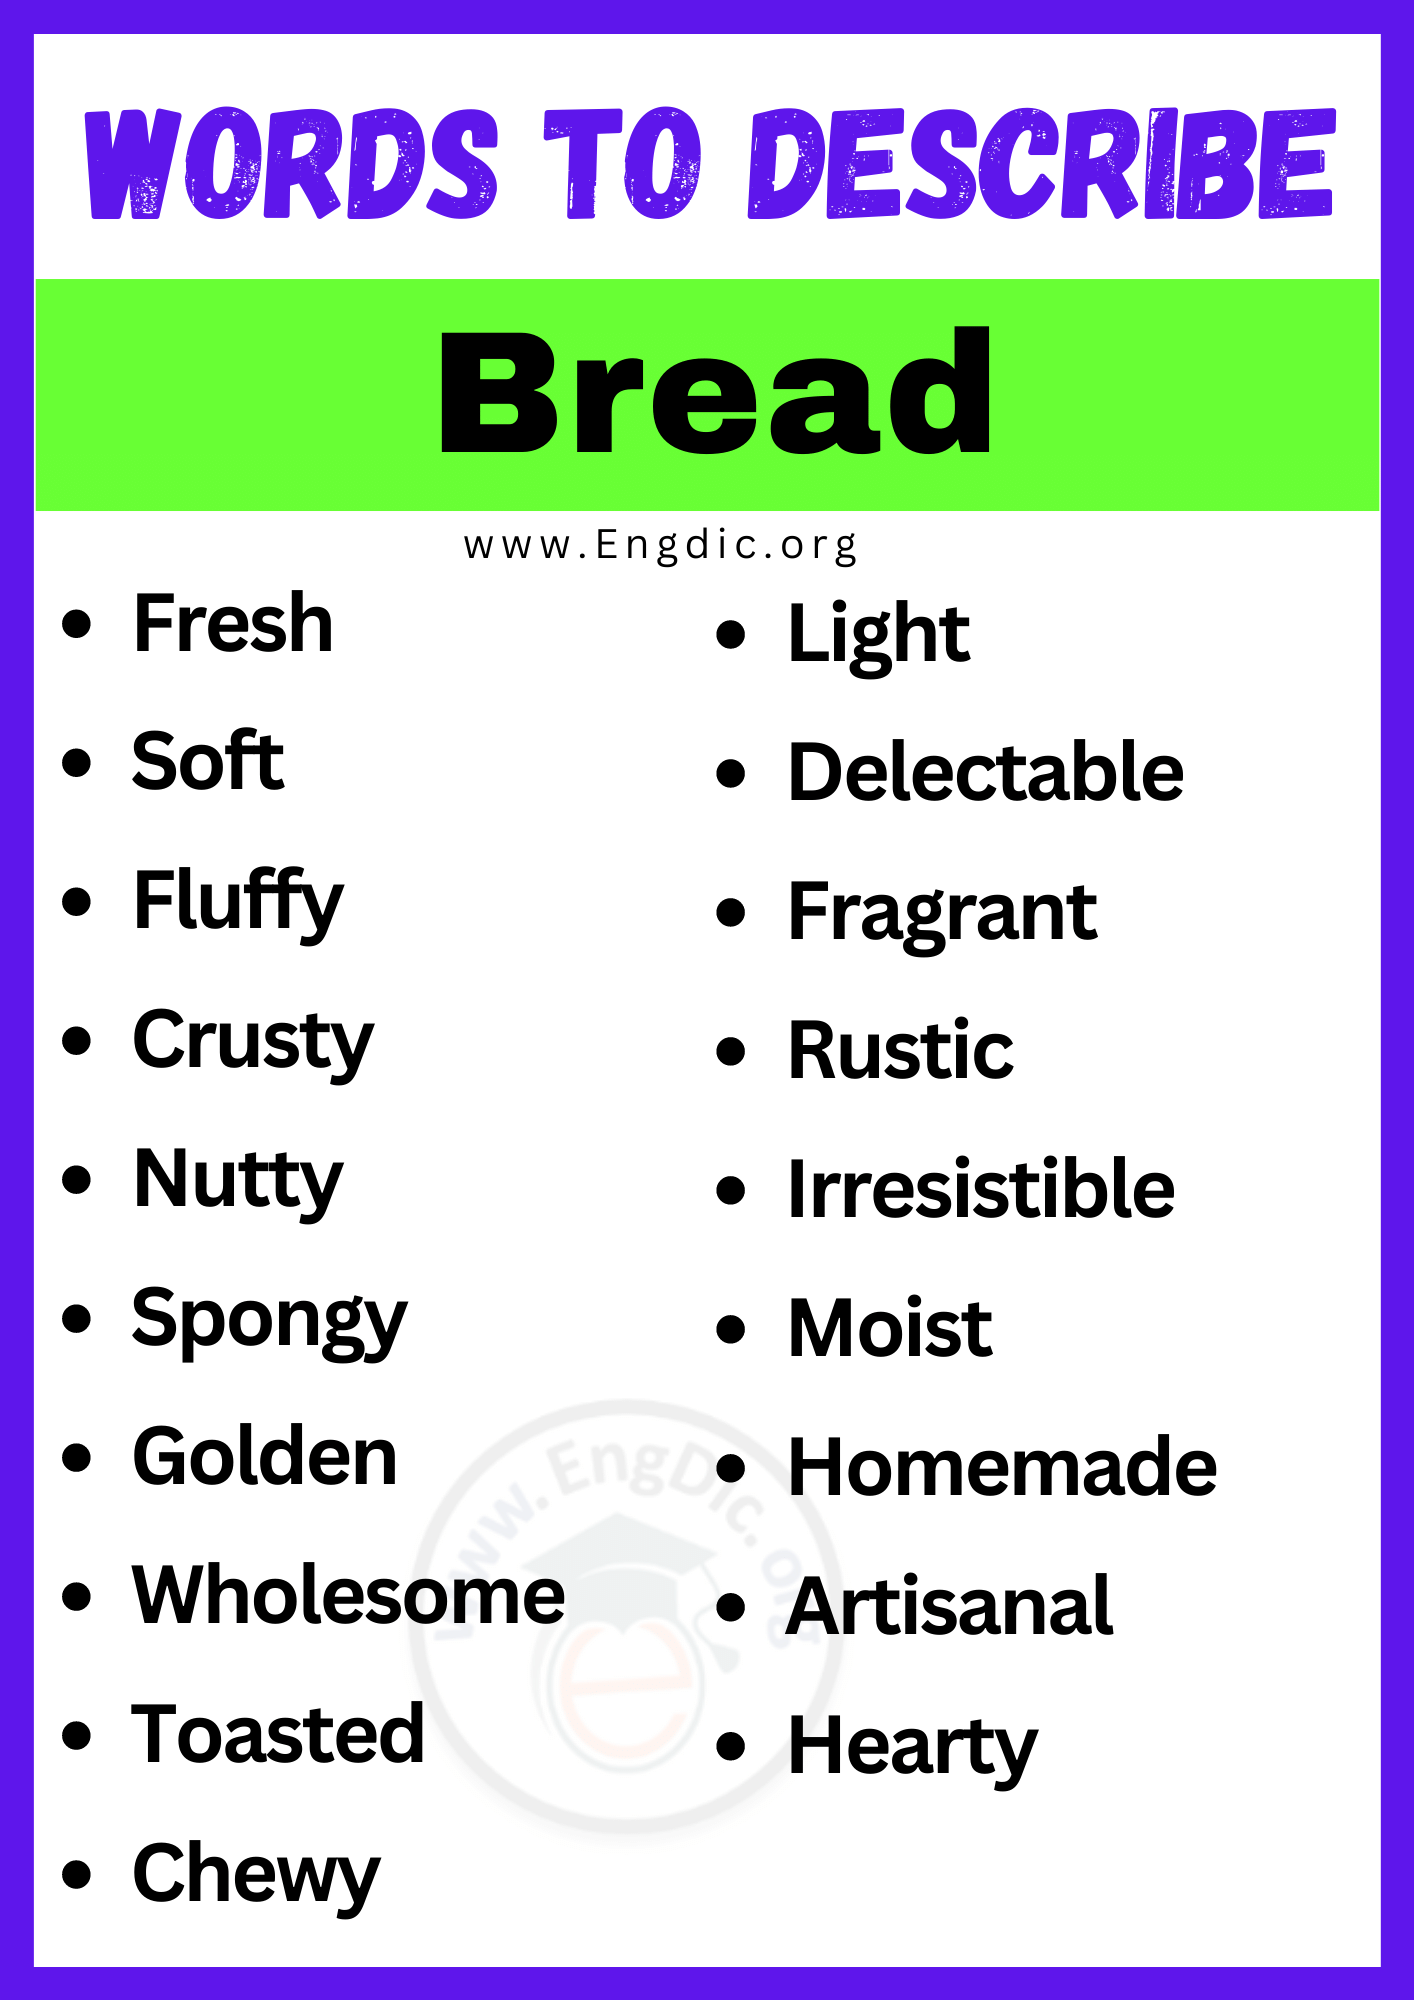 Words to Describe Bread